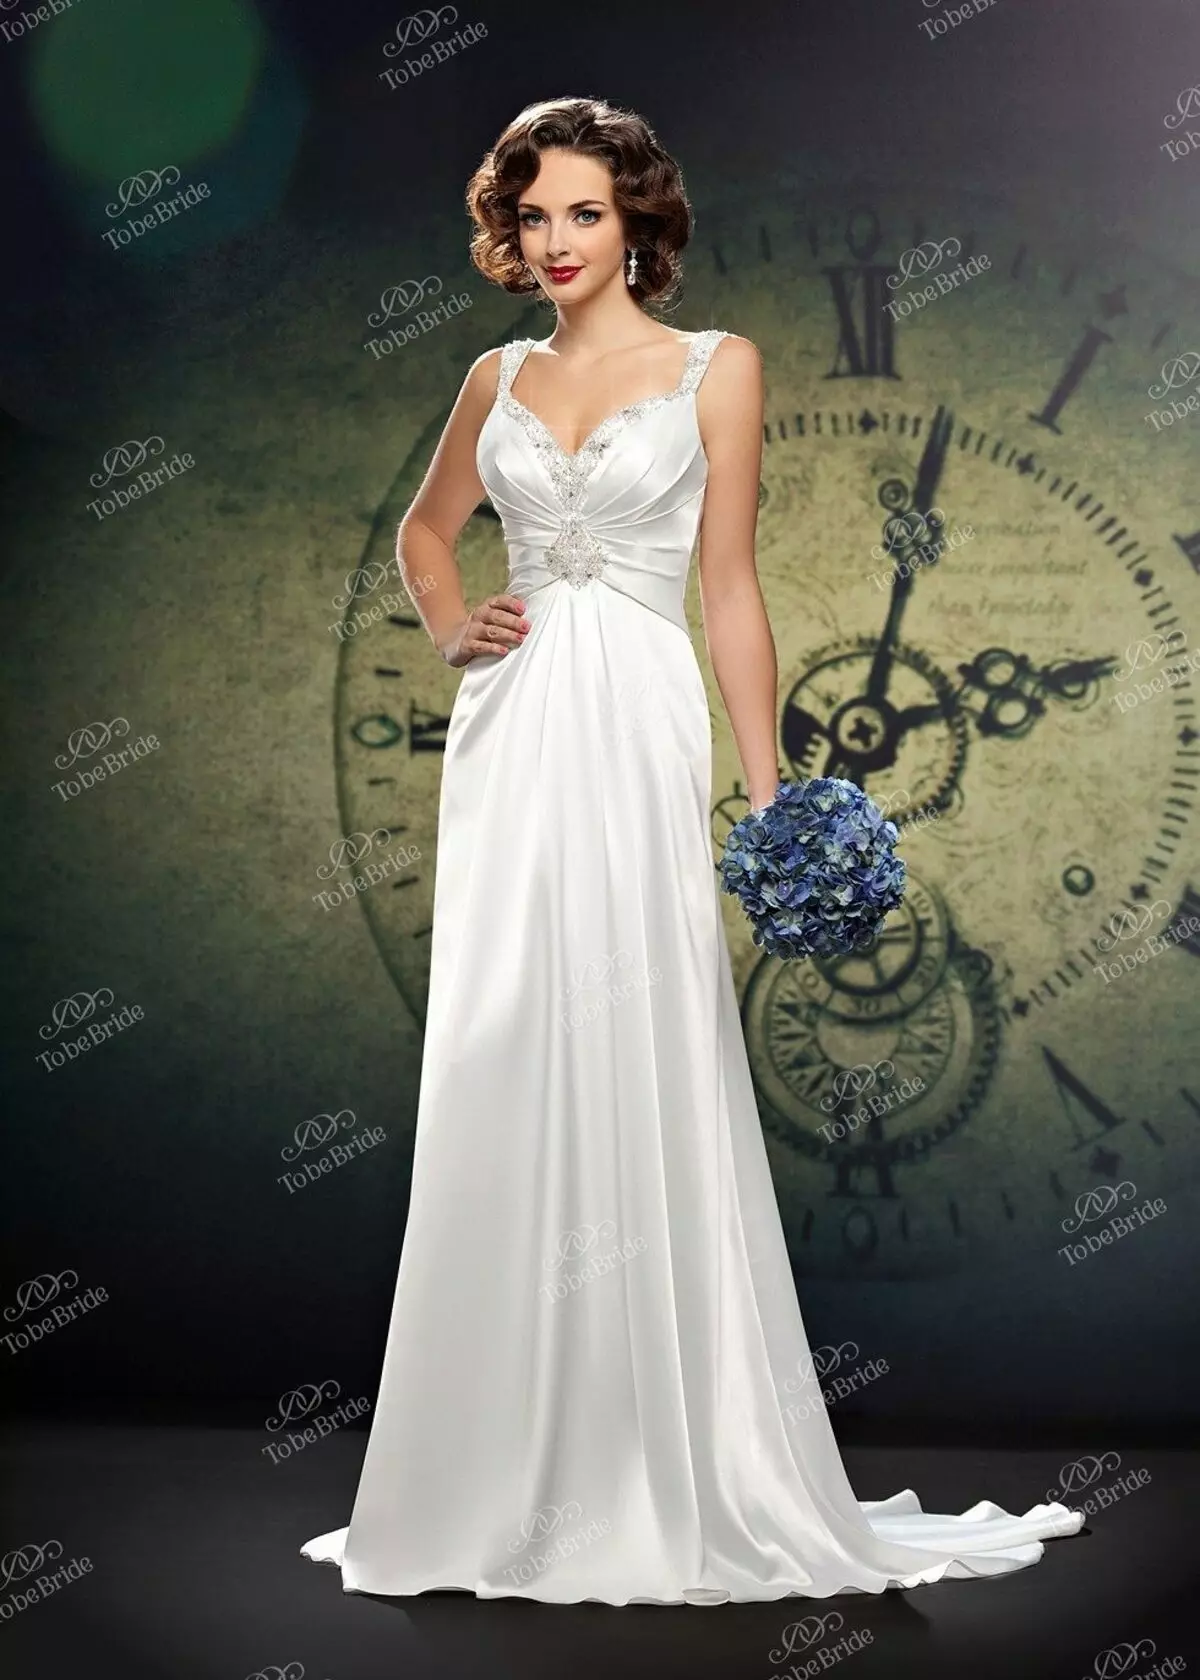 Bruid Versameling 2014 Wedding Dress in Ampire Style